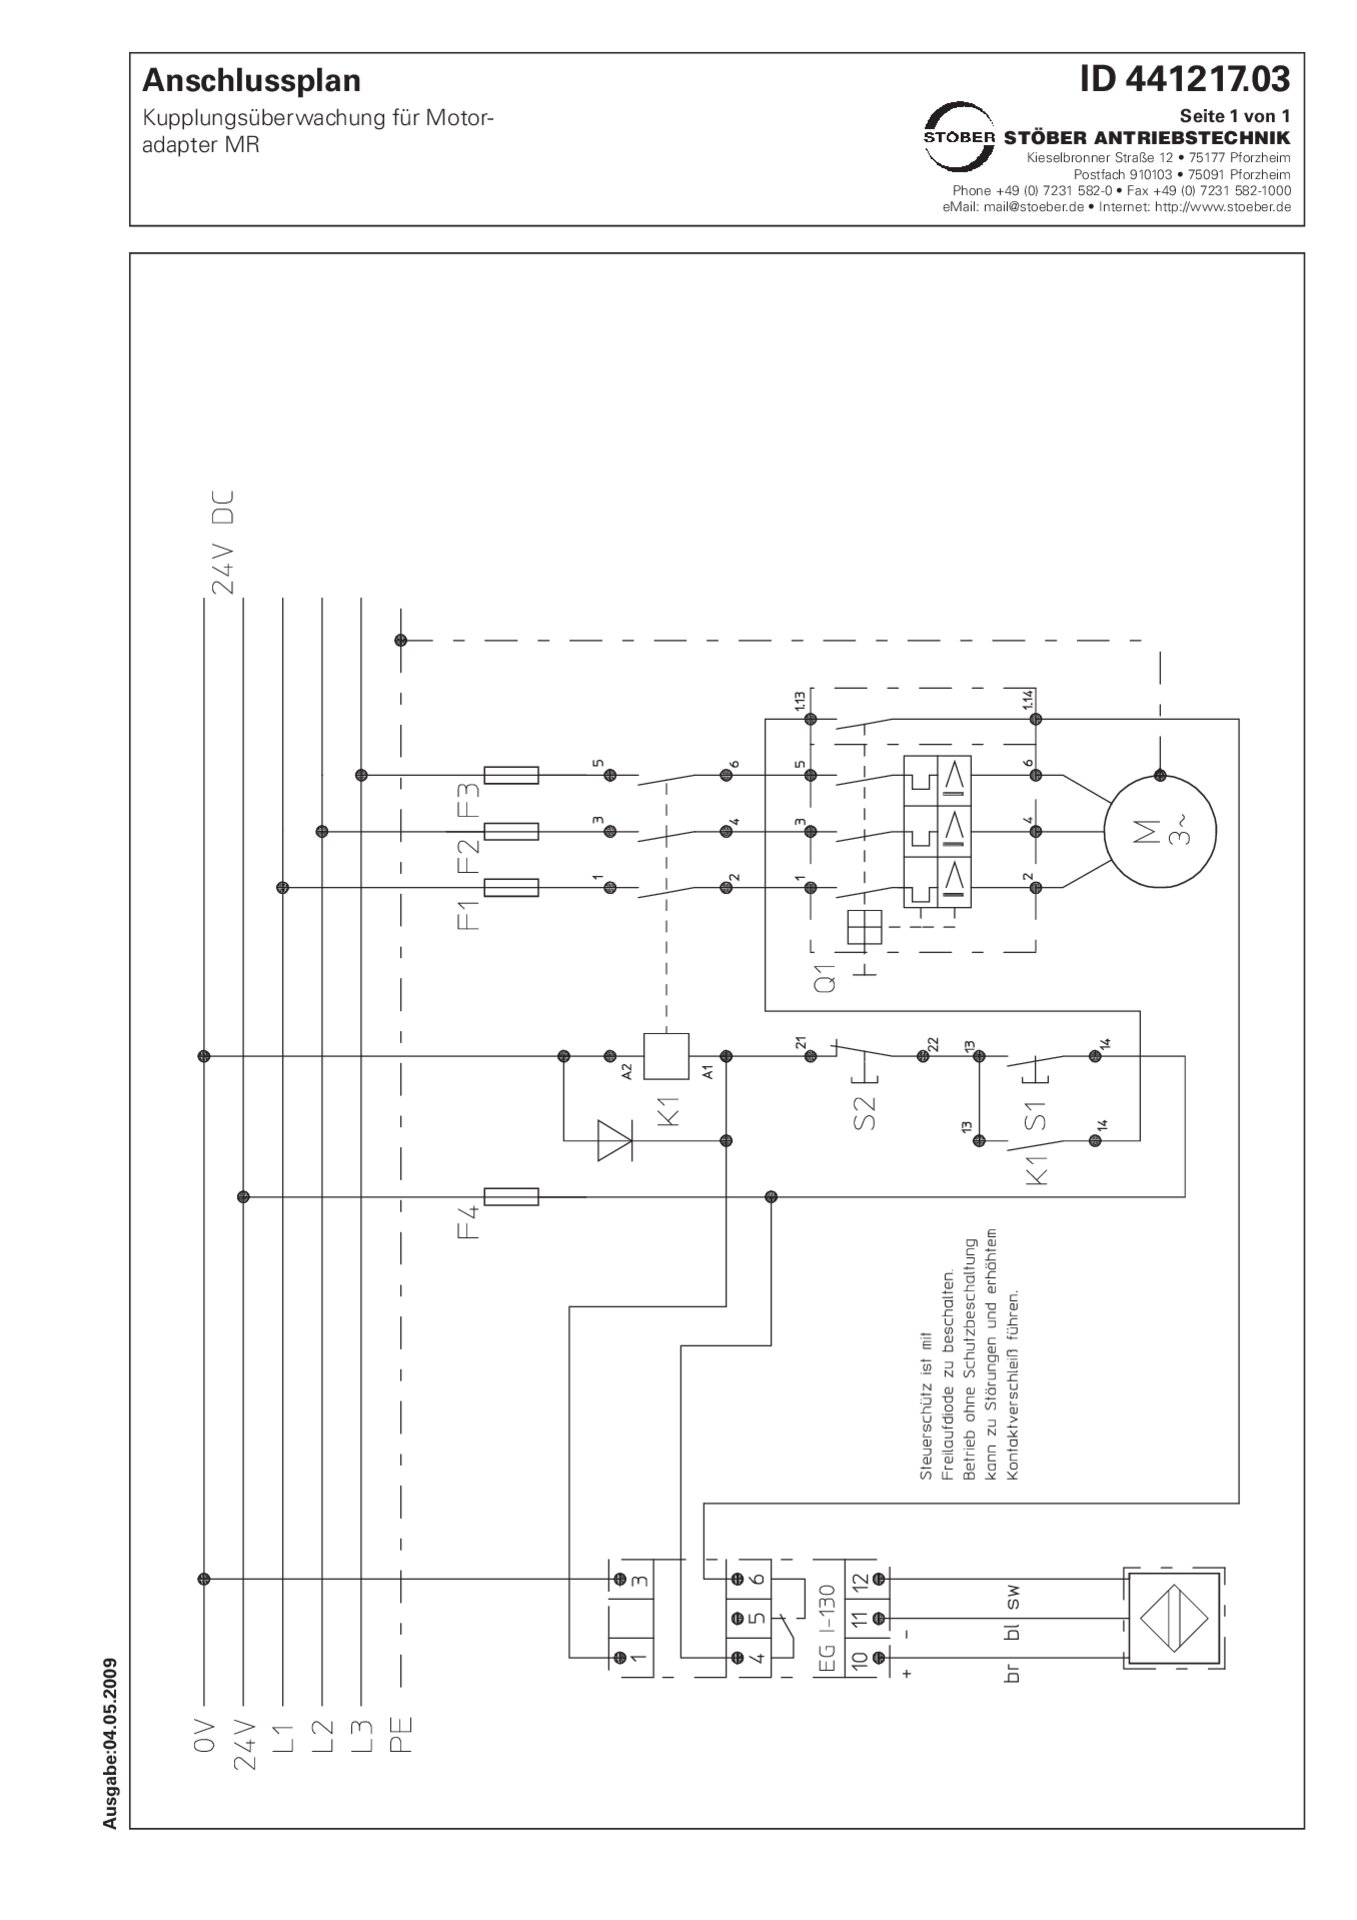 Schema di allacciamento Controllo accoppiamento per adattatore motore MR 24 V